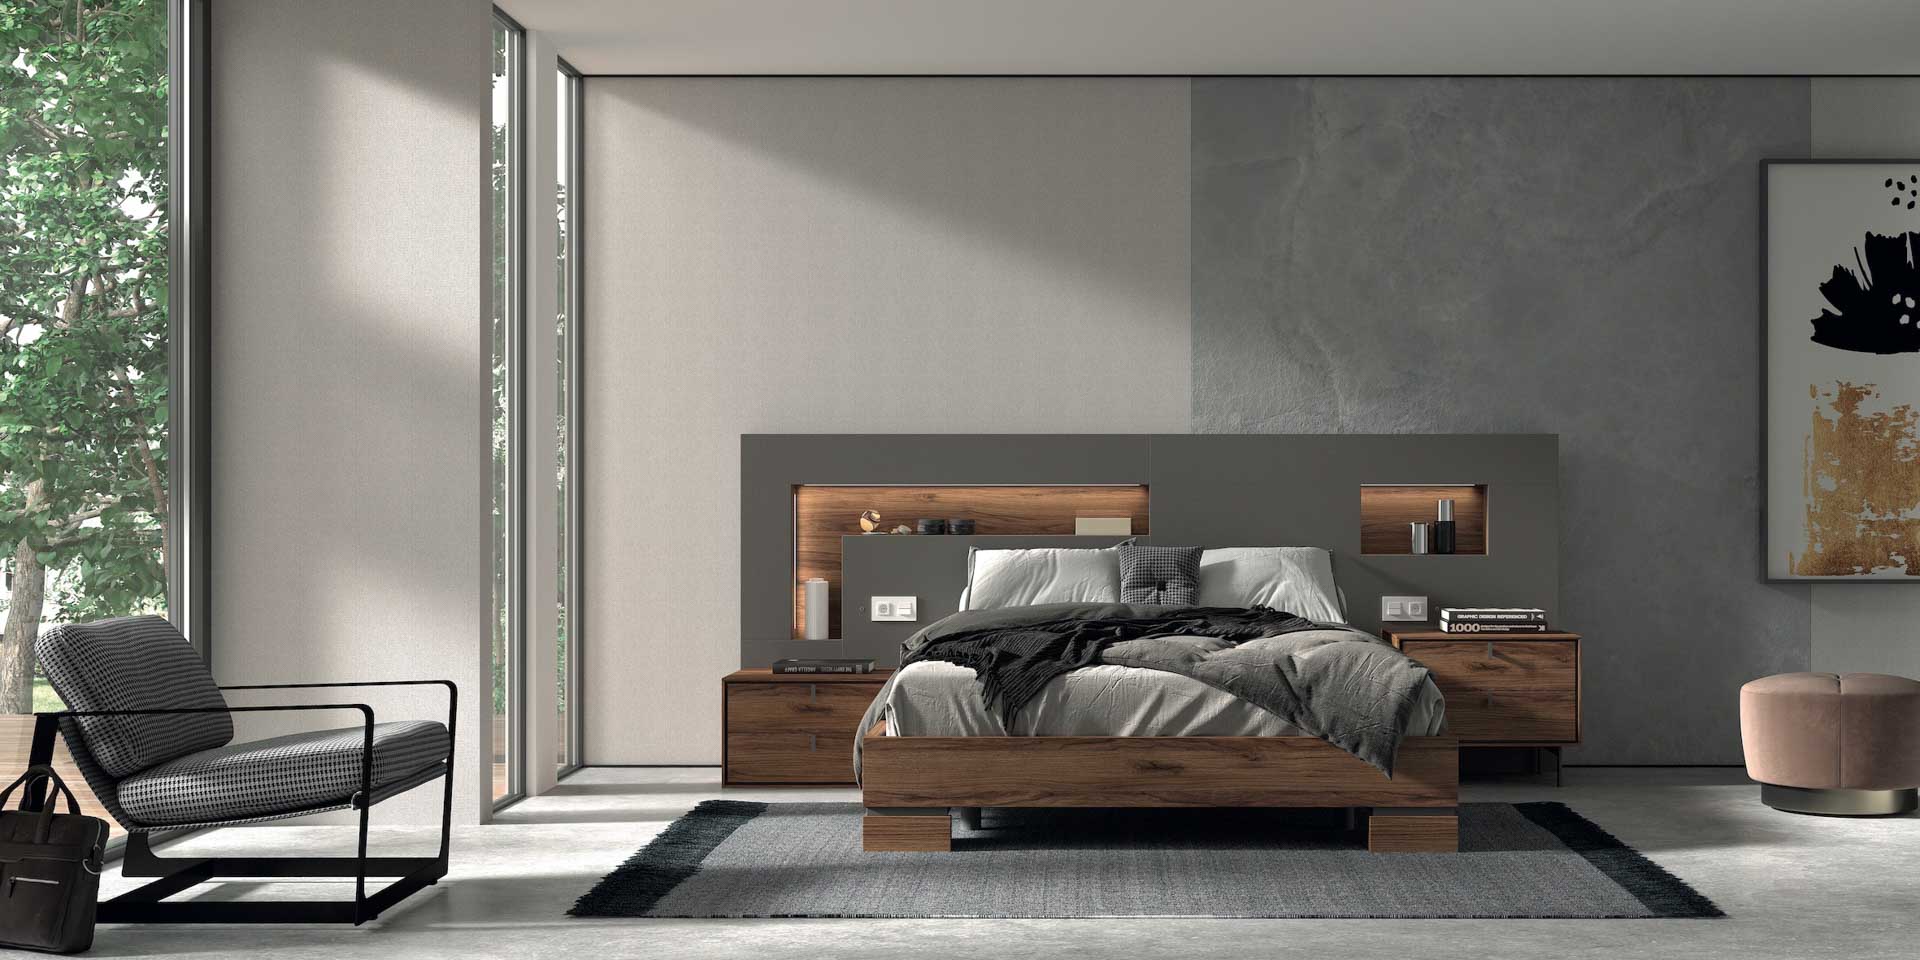 Diseño de mobiliario de dormitorio 48